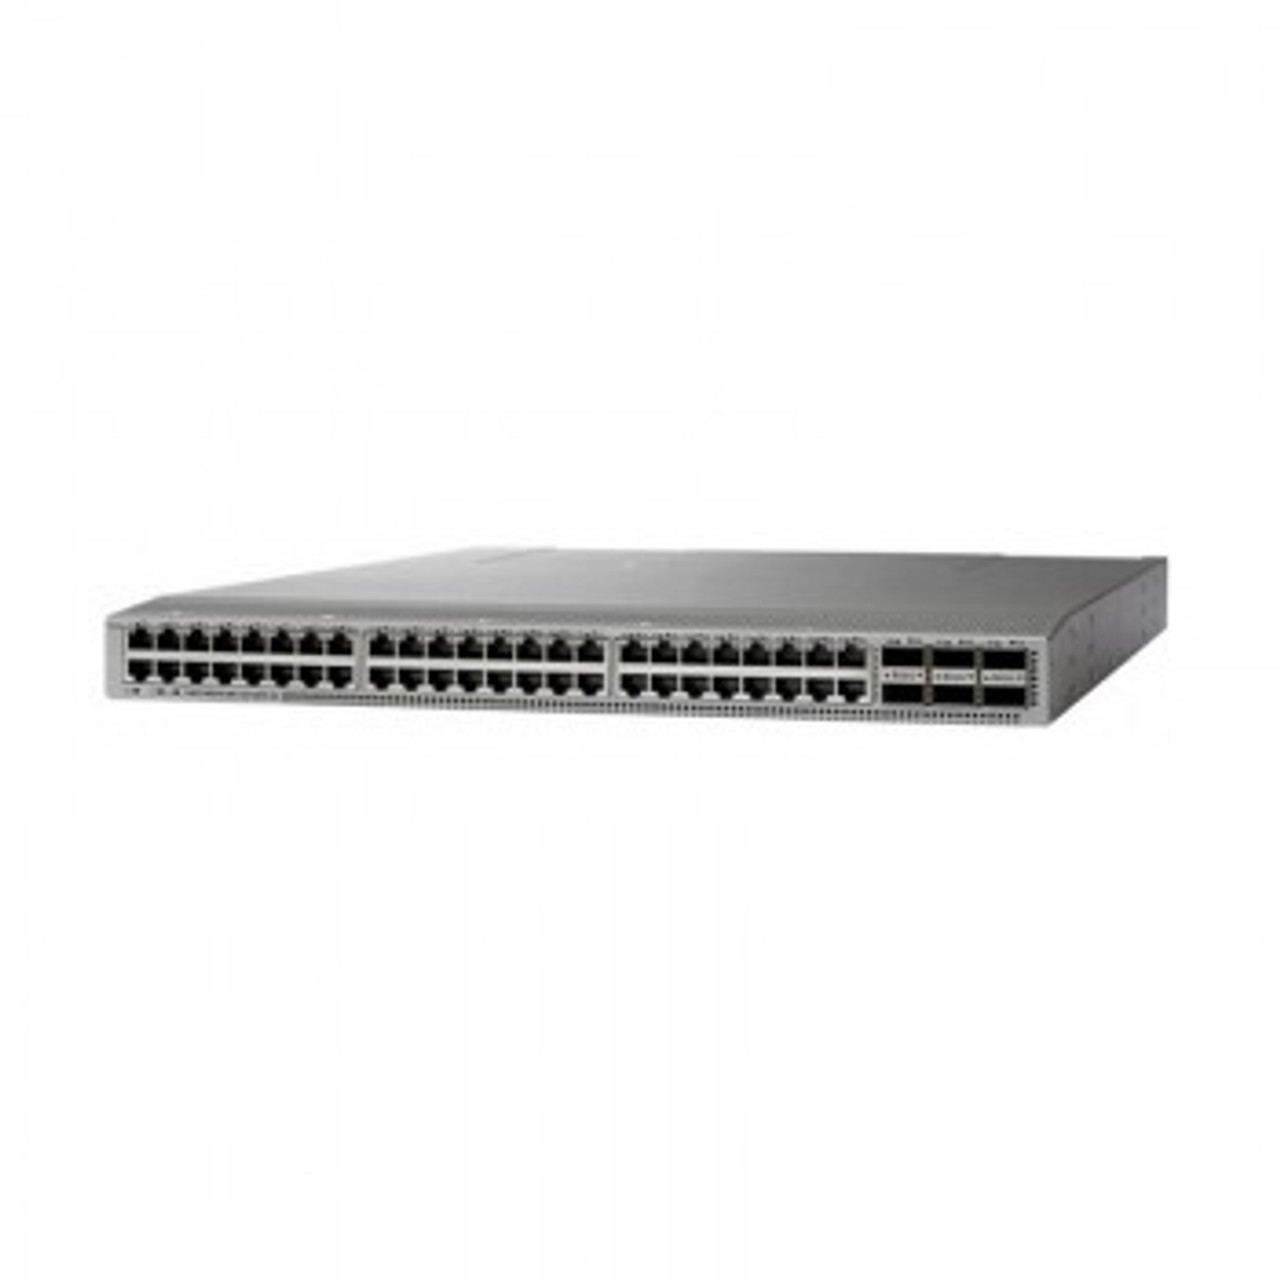 C1-N9K-C93108TC-EX - Cisco Nexus 9000 Series Platform